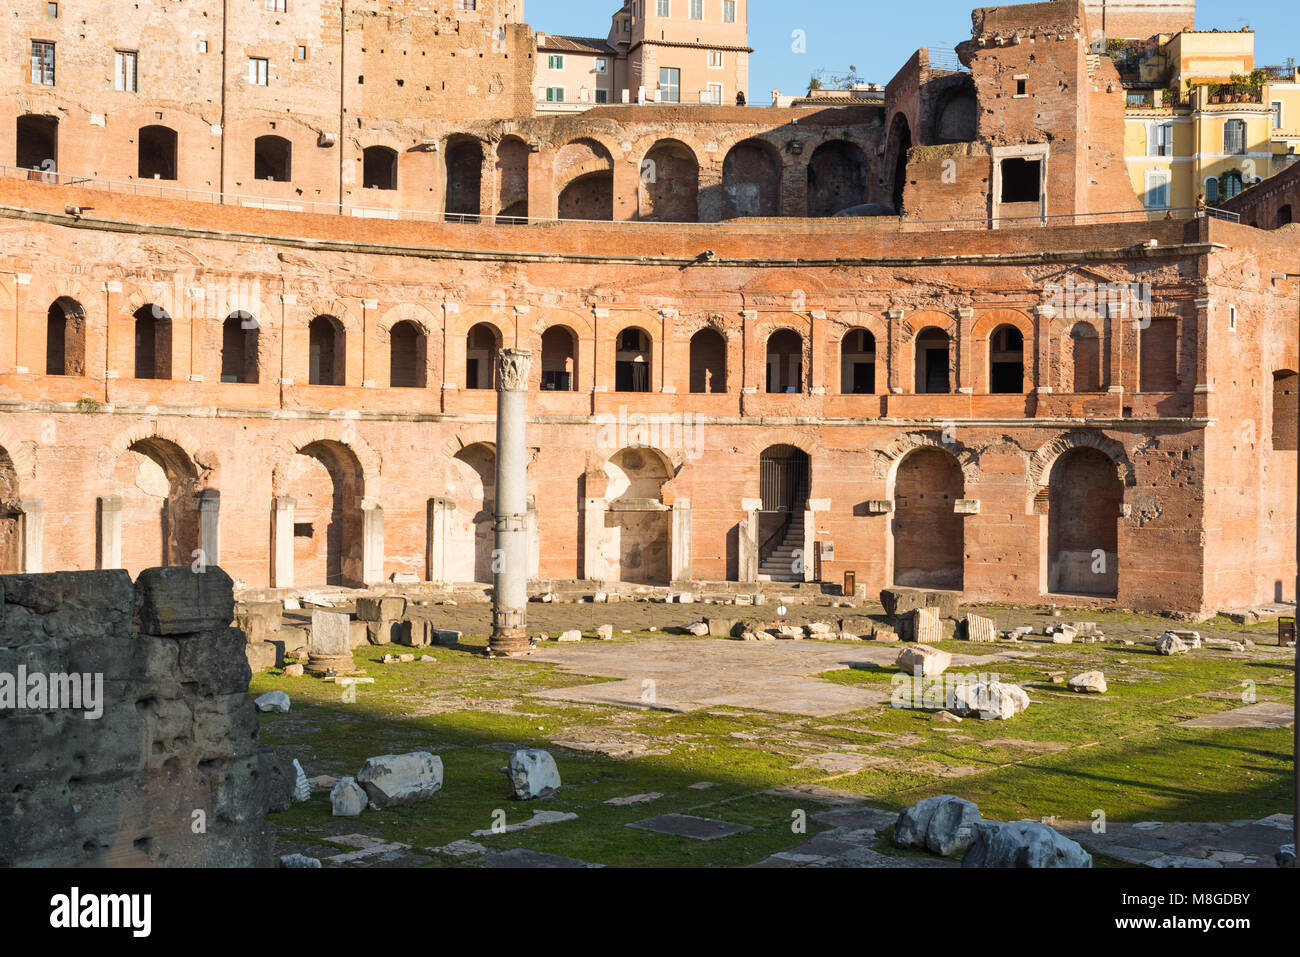 Mercati di Traiano e il Forum è un grande complesso di rovine nella città di Roma, Italia, situato sulla Via dei Fori Imperiali di Roma, lazio, Italy. Foto Stock